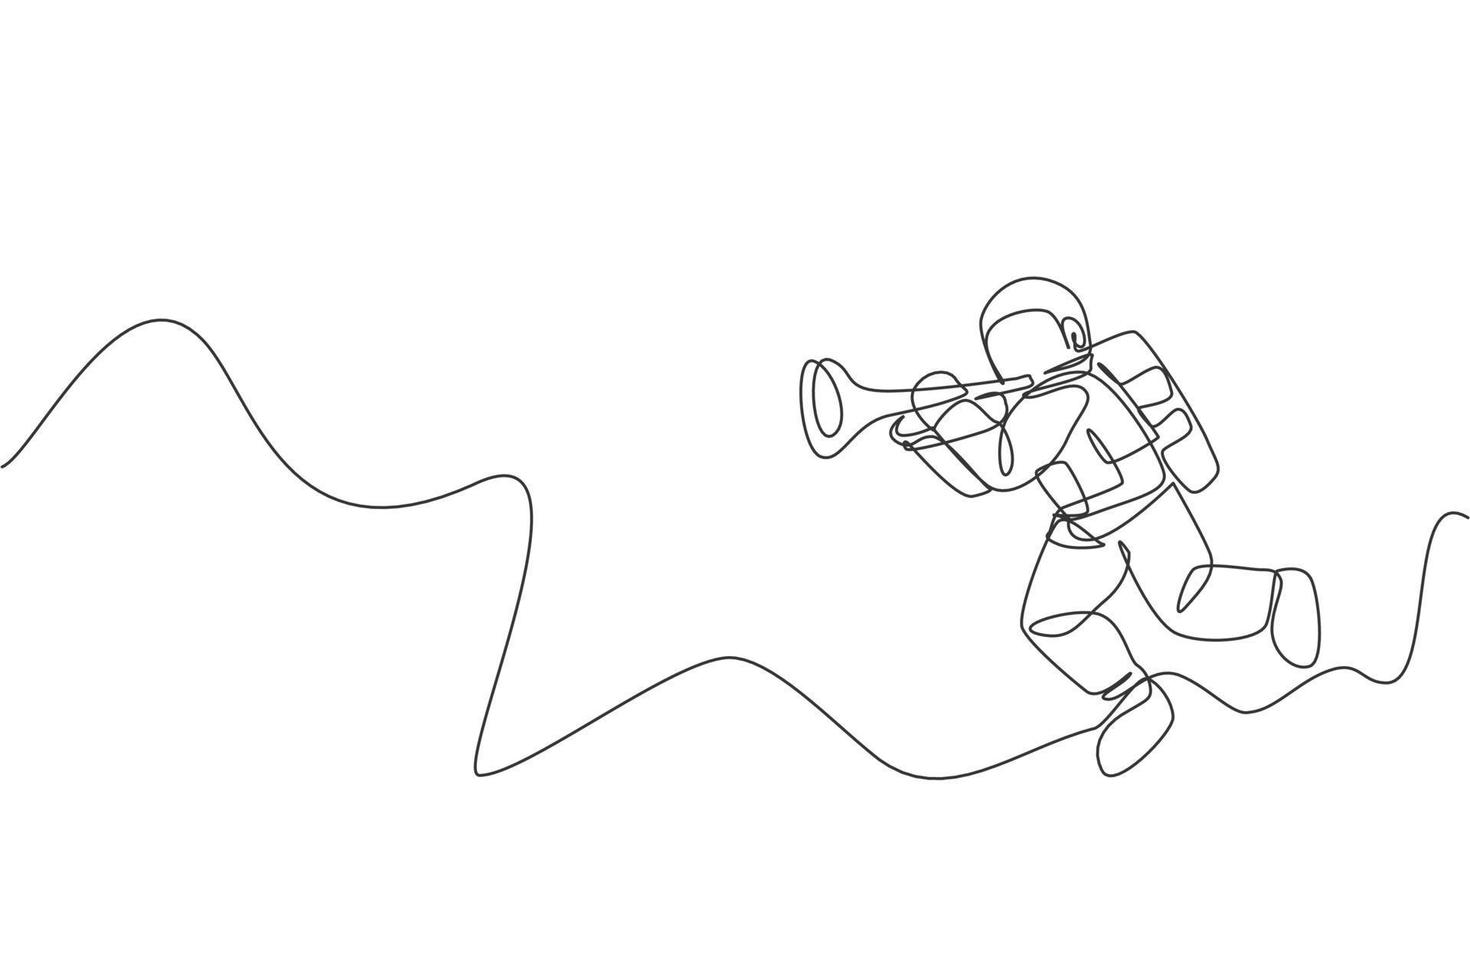 un dibujo de línea continua de un astronauta con traje espacial tocando la trompeta en el universo de la galaxia. Concierto de música del espacio exterior y concepto de orquesta. Ilustración gráfica de vector de diseño de dibujo de línea única dinámica